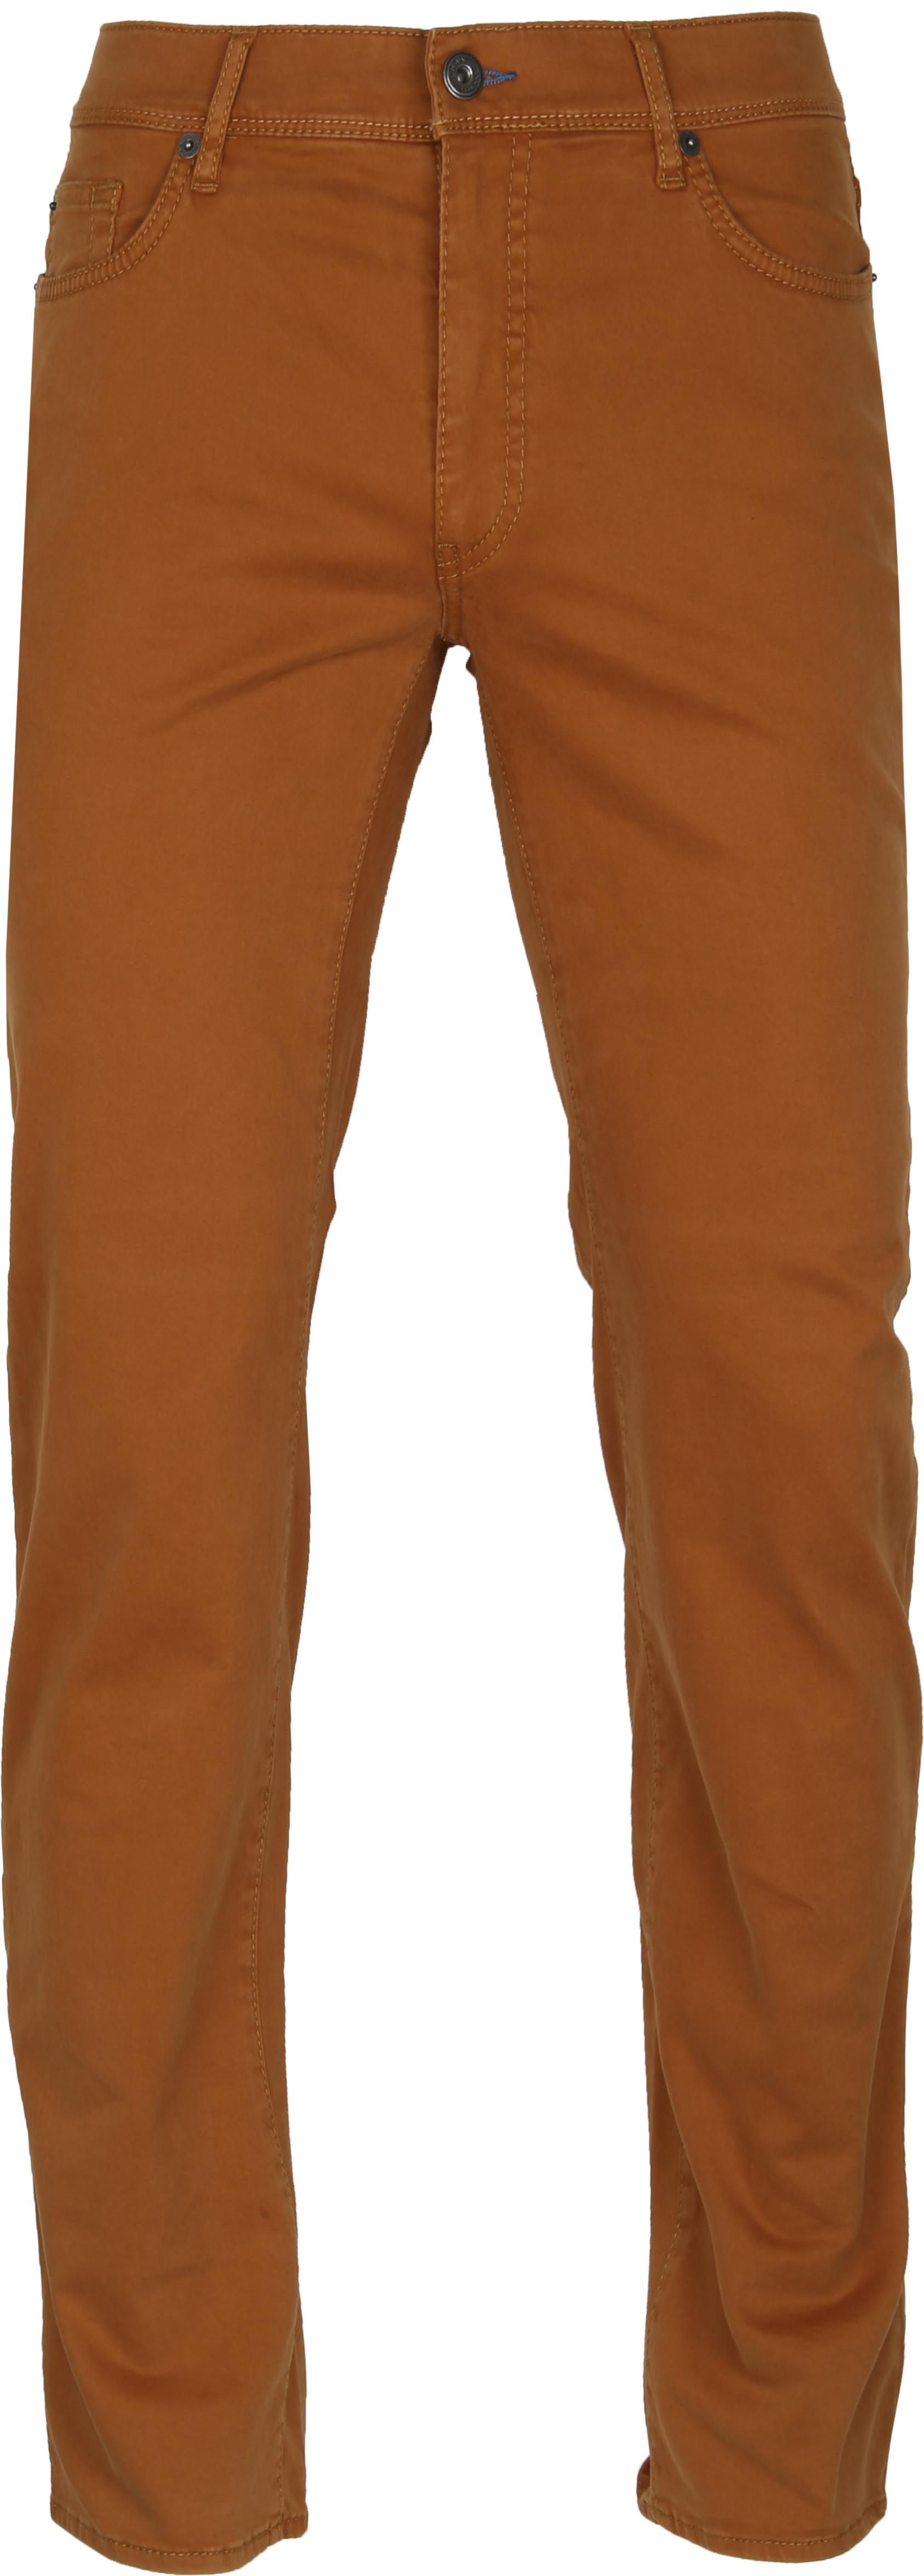 Brax Cadiz Pants Five Pocket Camel Brown size W 32